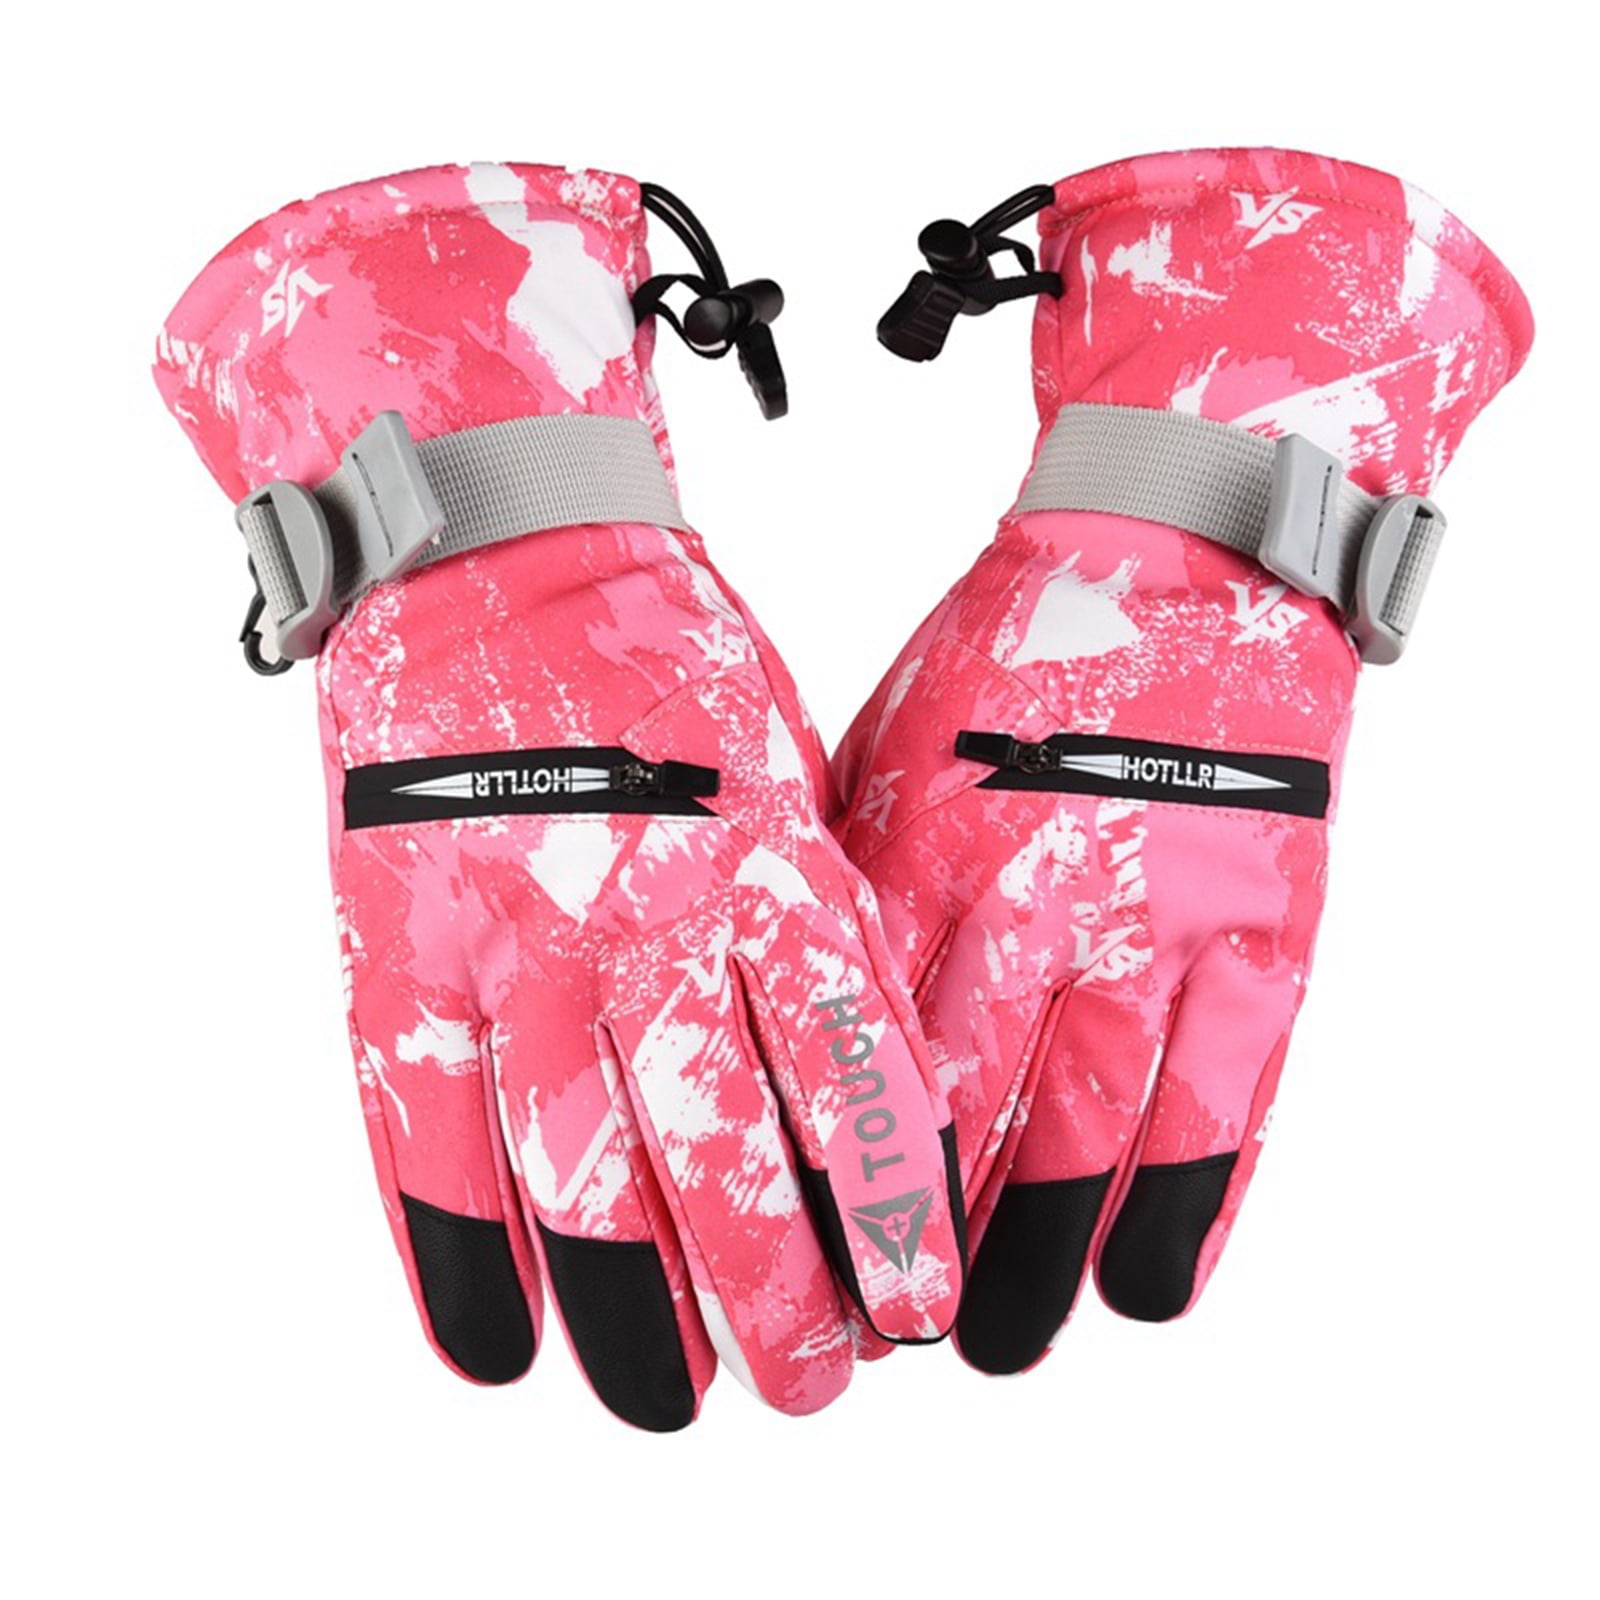 Waterproof Men's Women's Winter Warm Motorcycle Driving Touch Screen Ski Gloves 